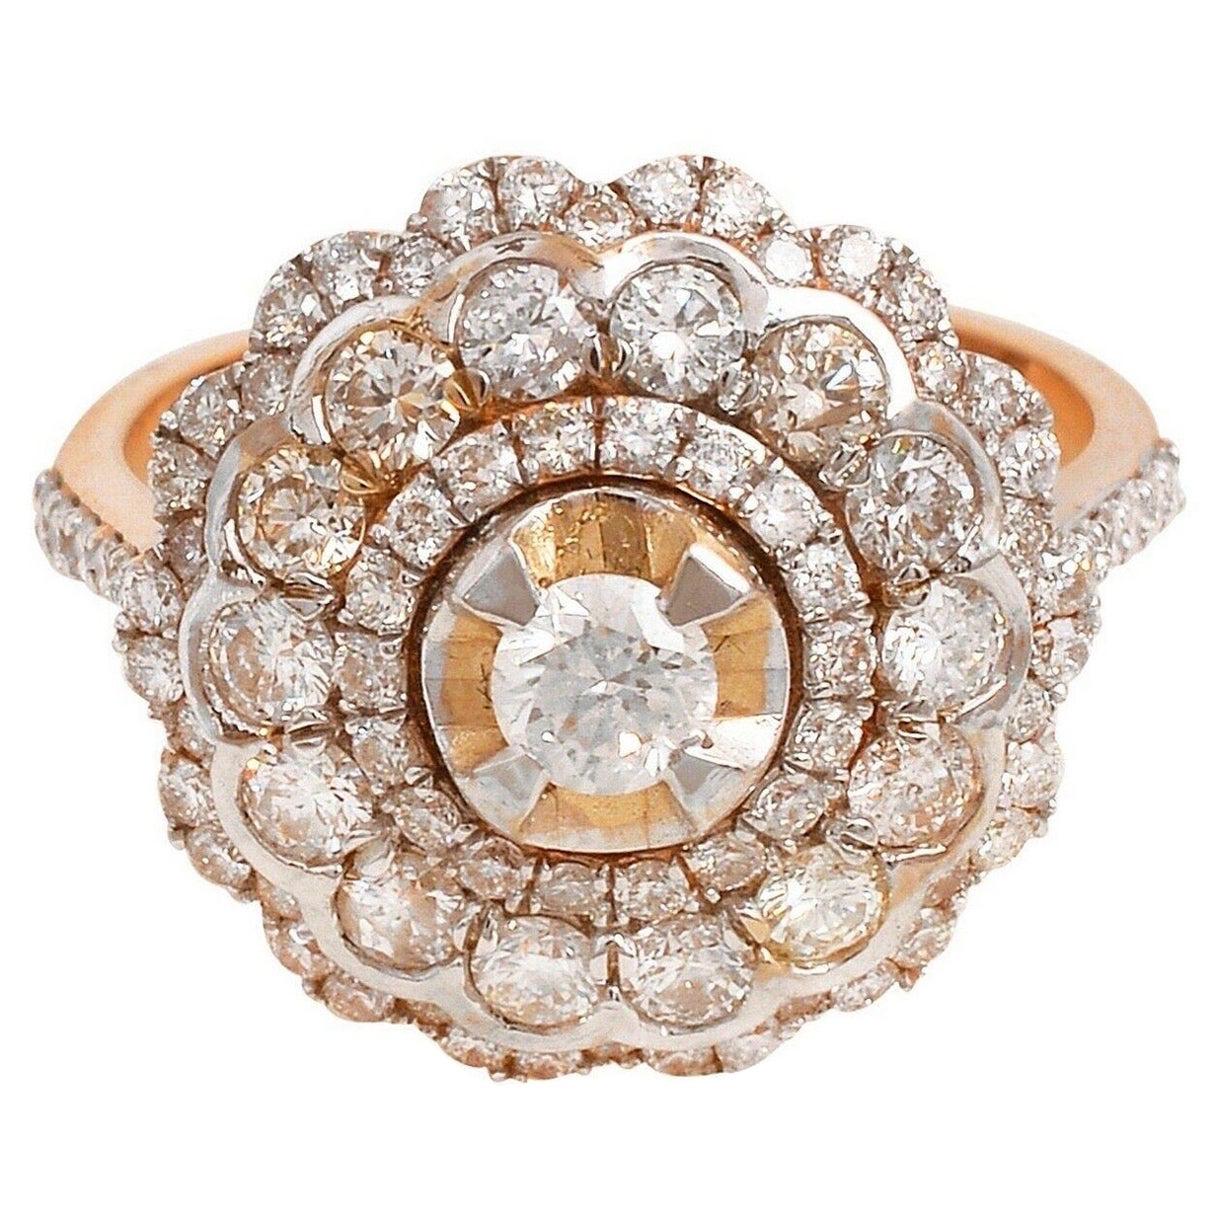 1.85 Carat Diamond Antique Style 18 Karat Rose Gold Ring